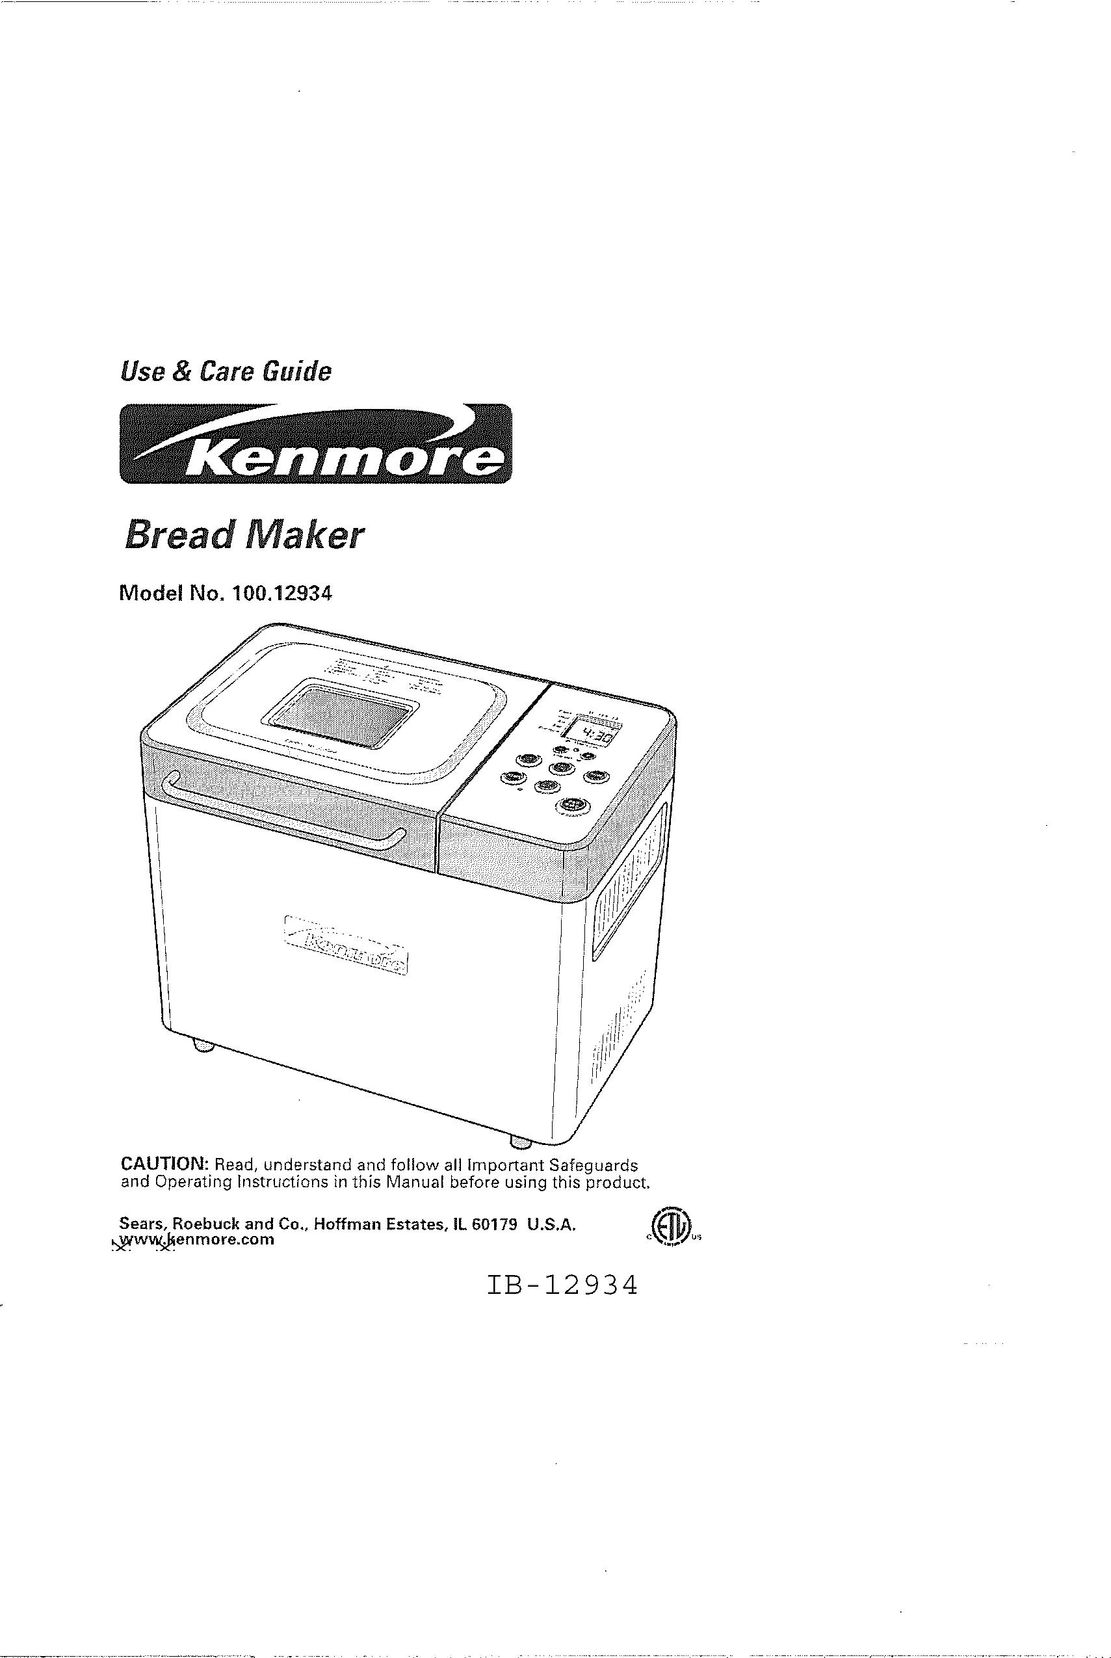 Kenmore 100.12934 Bread Maker User Manual